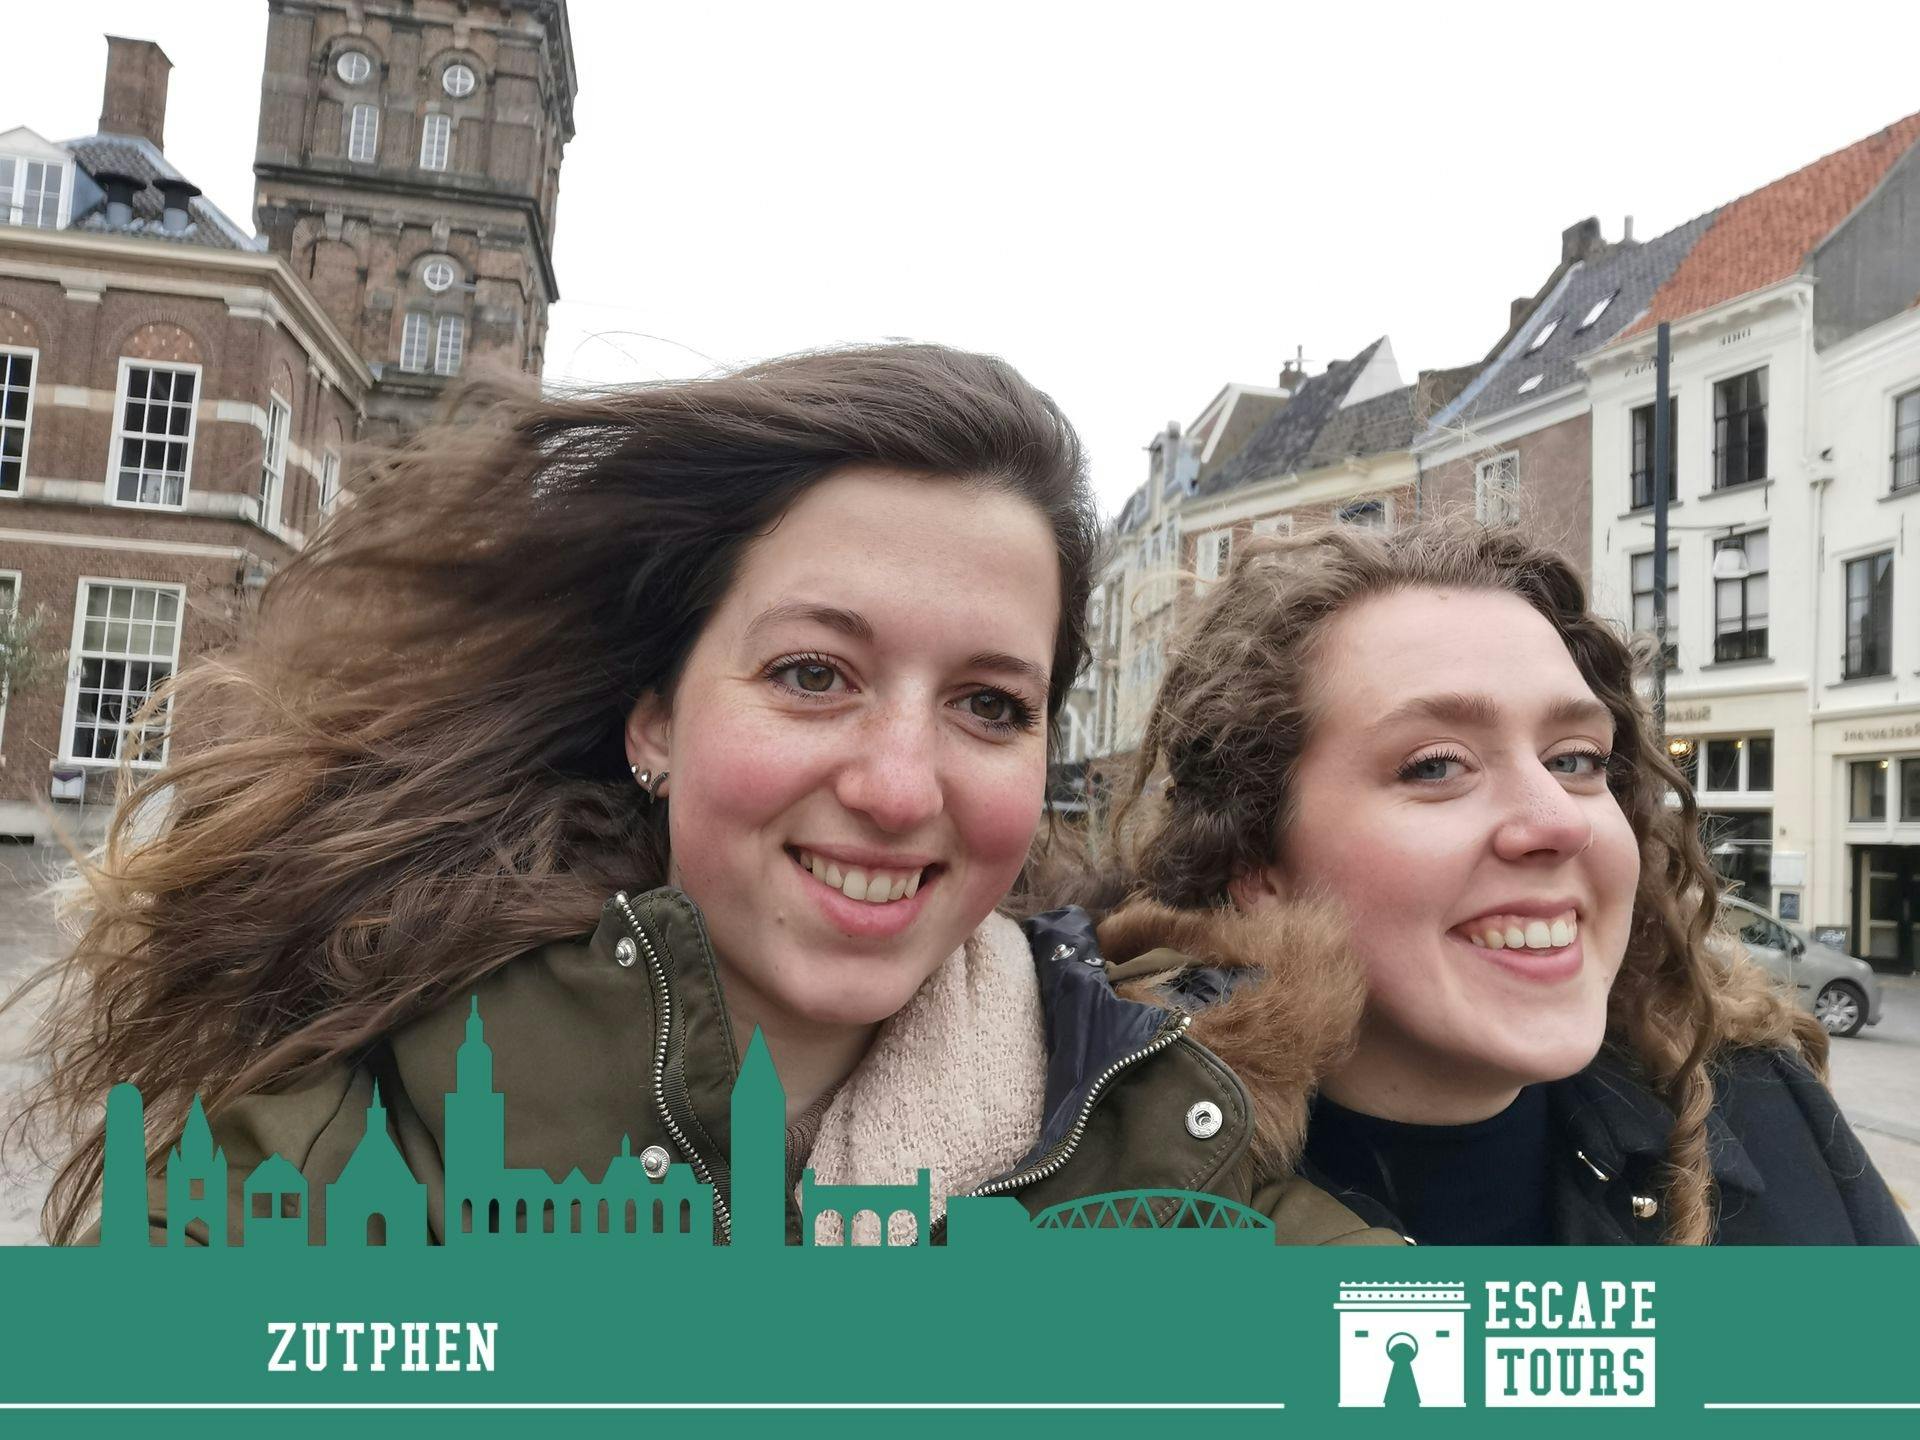 Escape Tour autoguidato, sfida interattiva della città a Zutphen